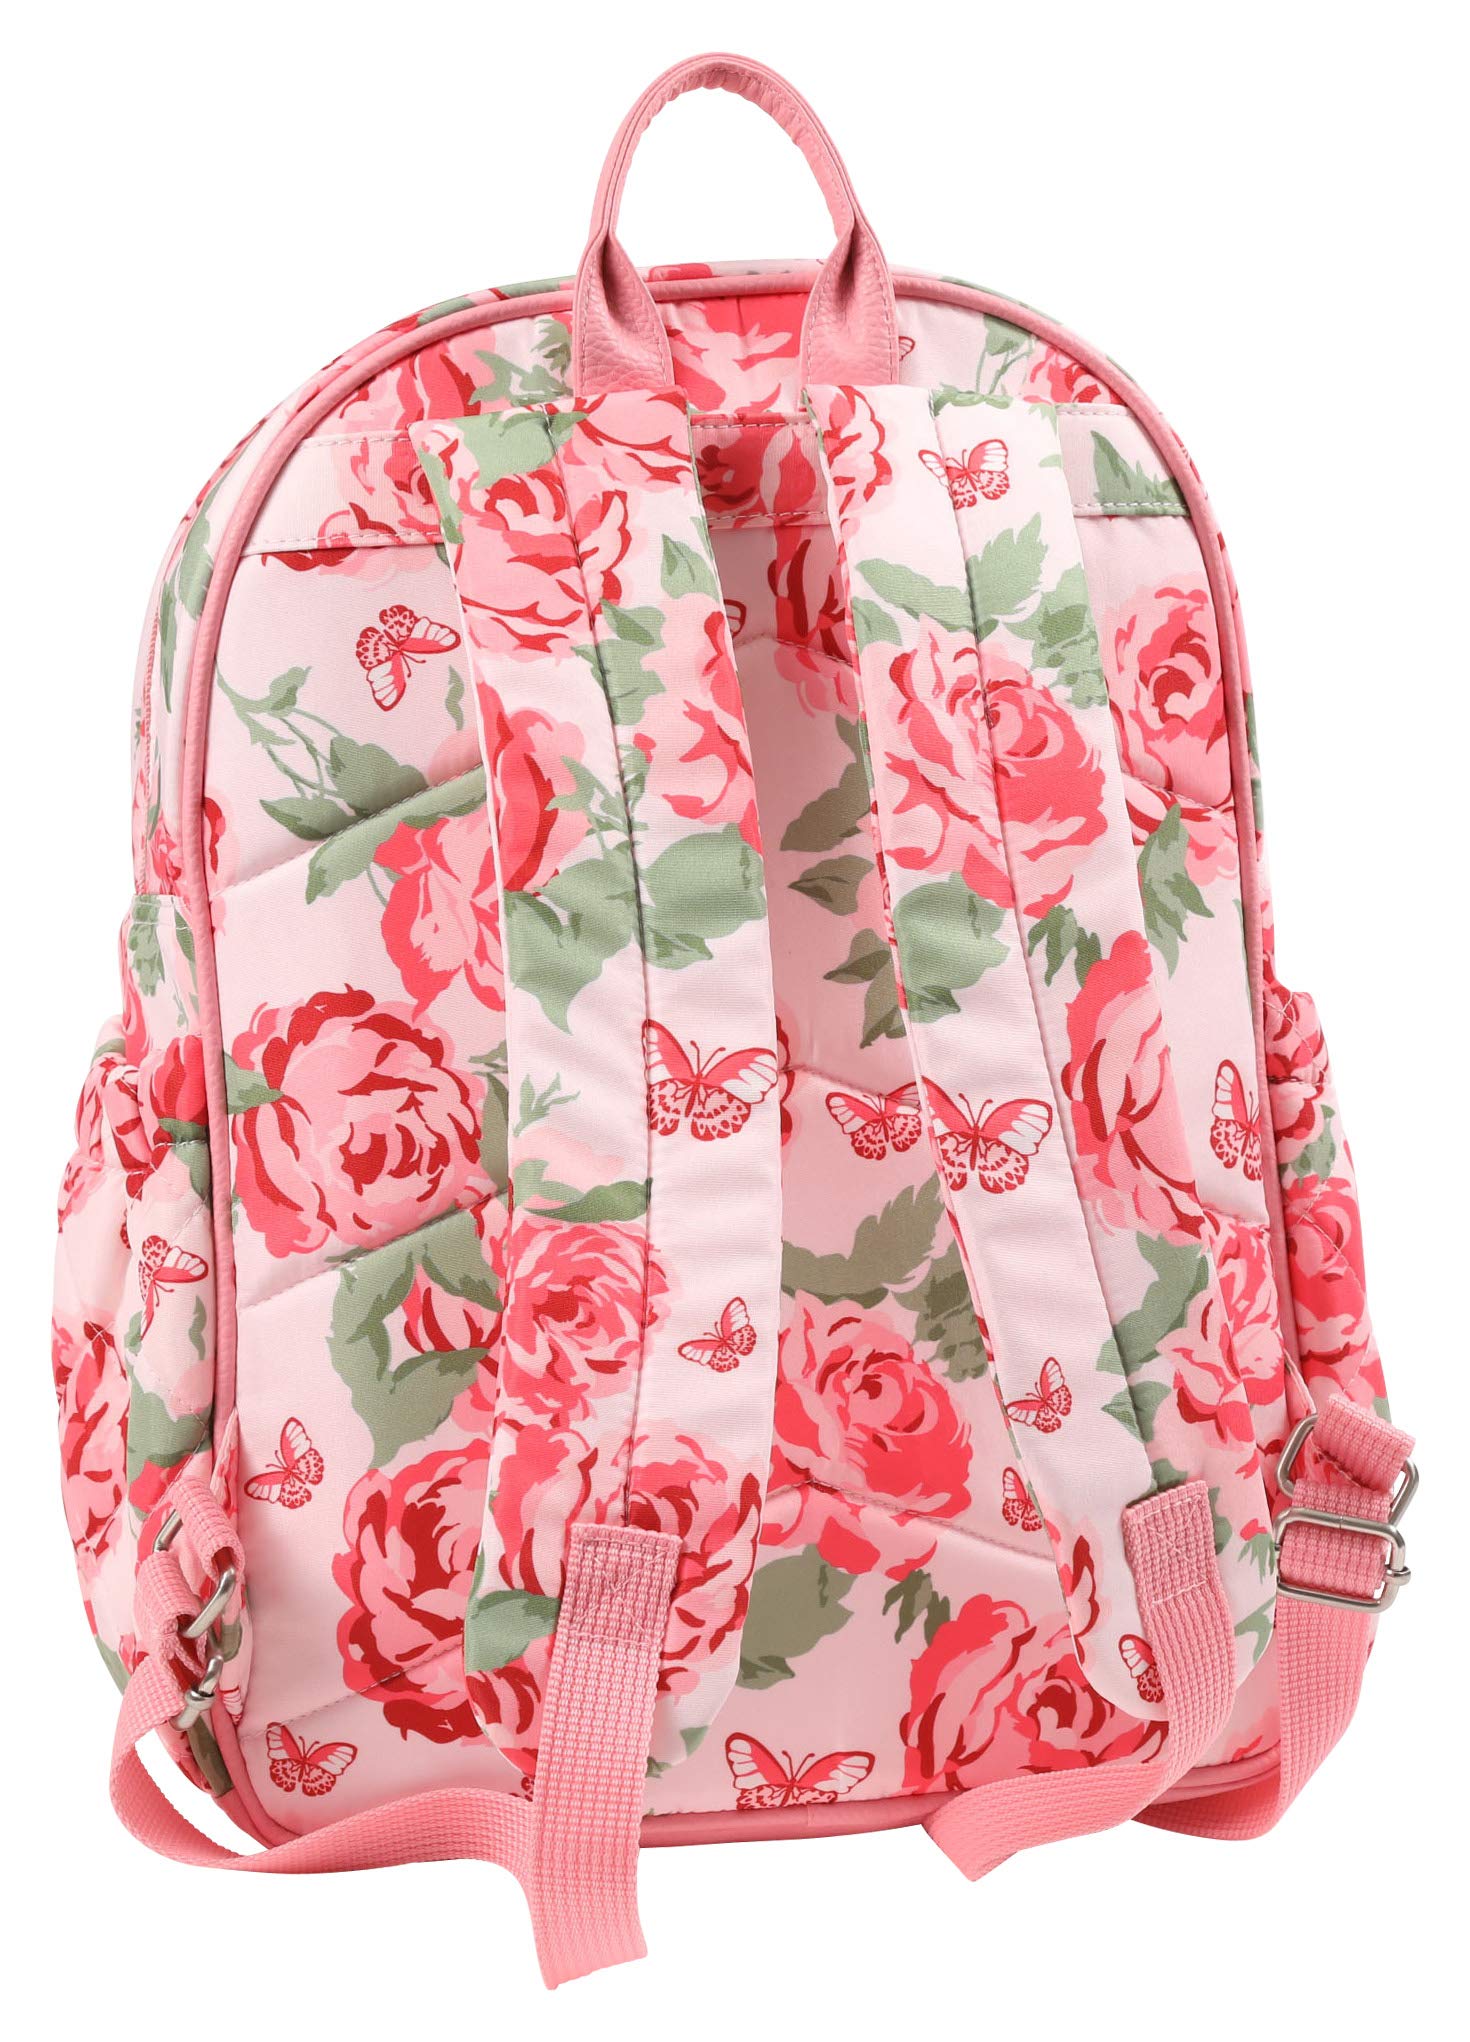 Laura Ashley Backpack Diaper Bag, London Rose Print